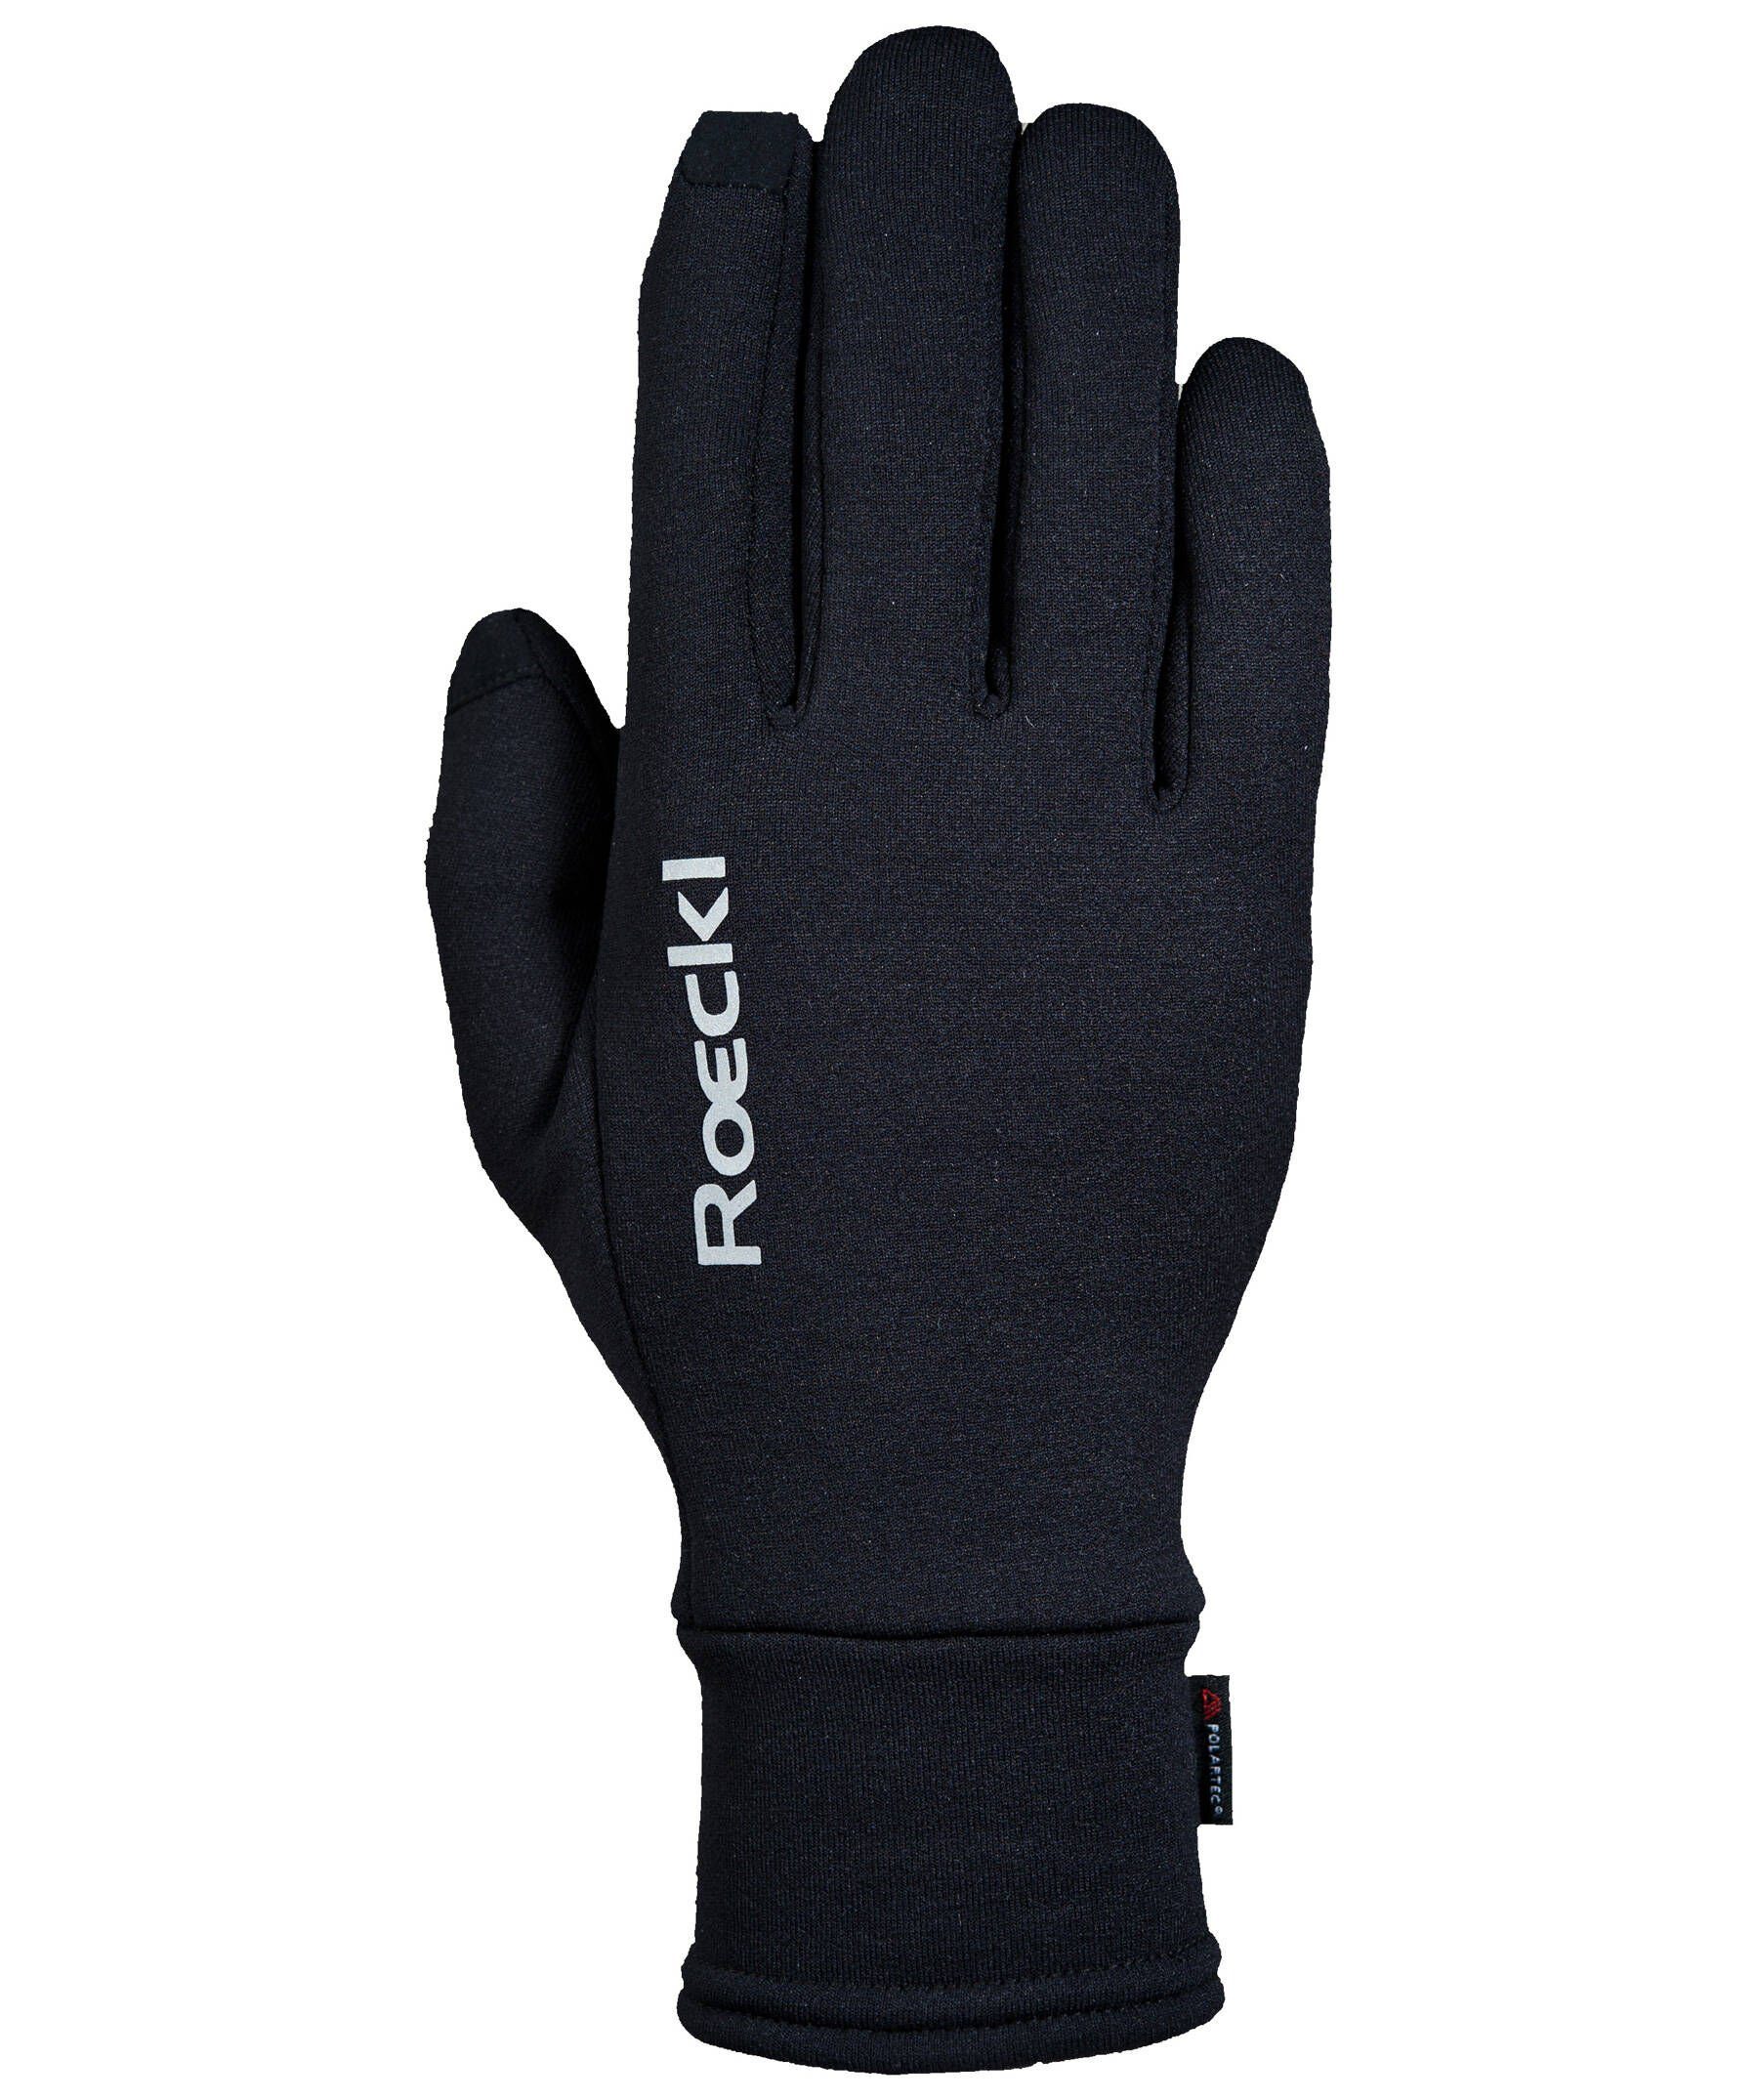 Roeckl SPORTS Multisporthandschuhe Outdoor-Handschuh "Kailash" schwarz (200) | Trainingshandschuhe